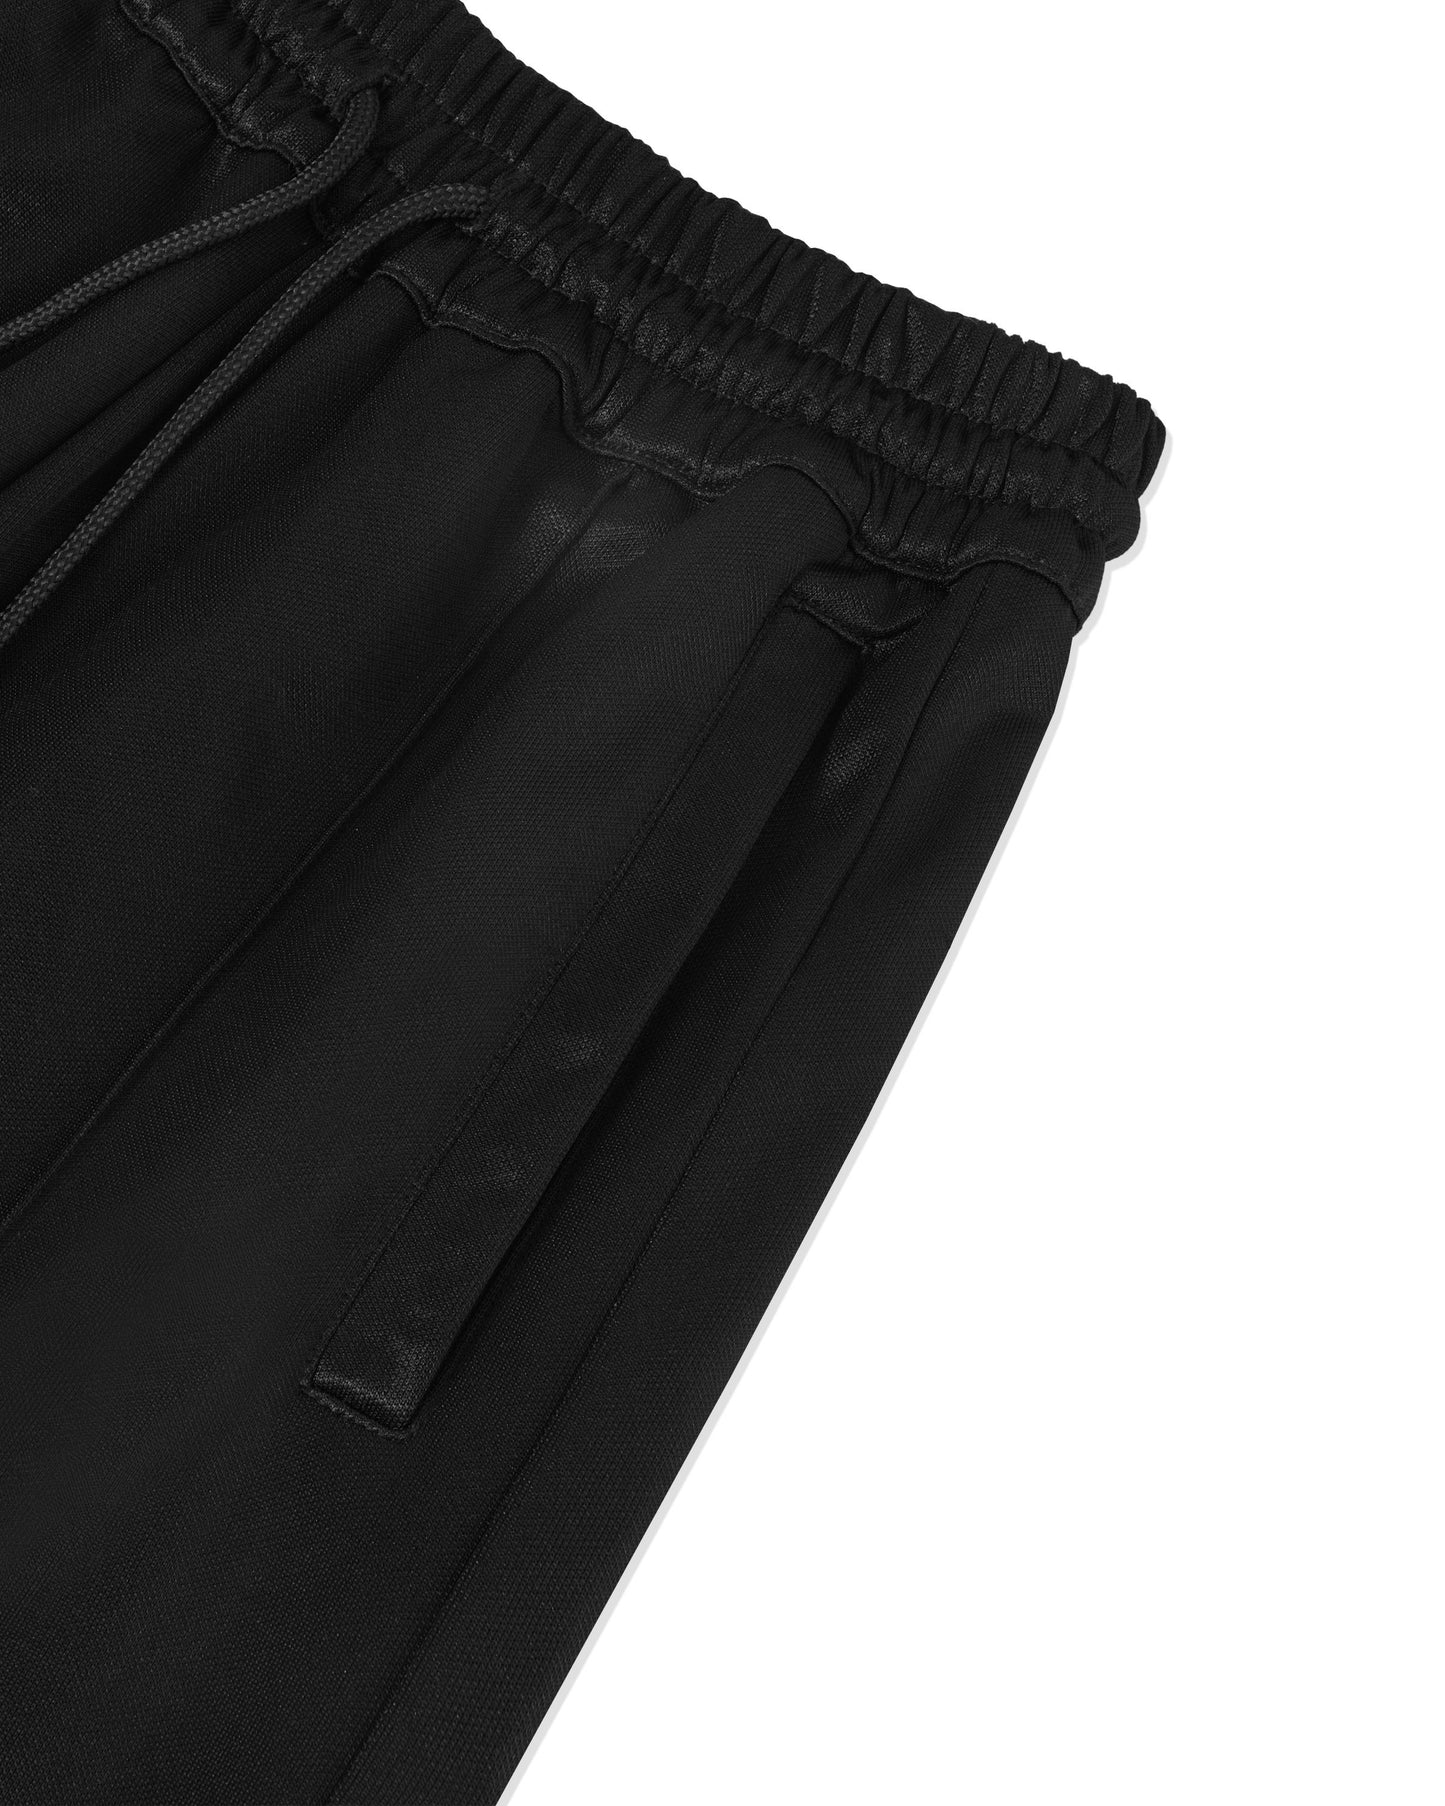 Levents® Classic Track Pants/ Black